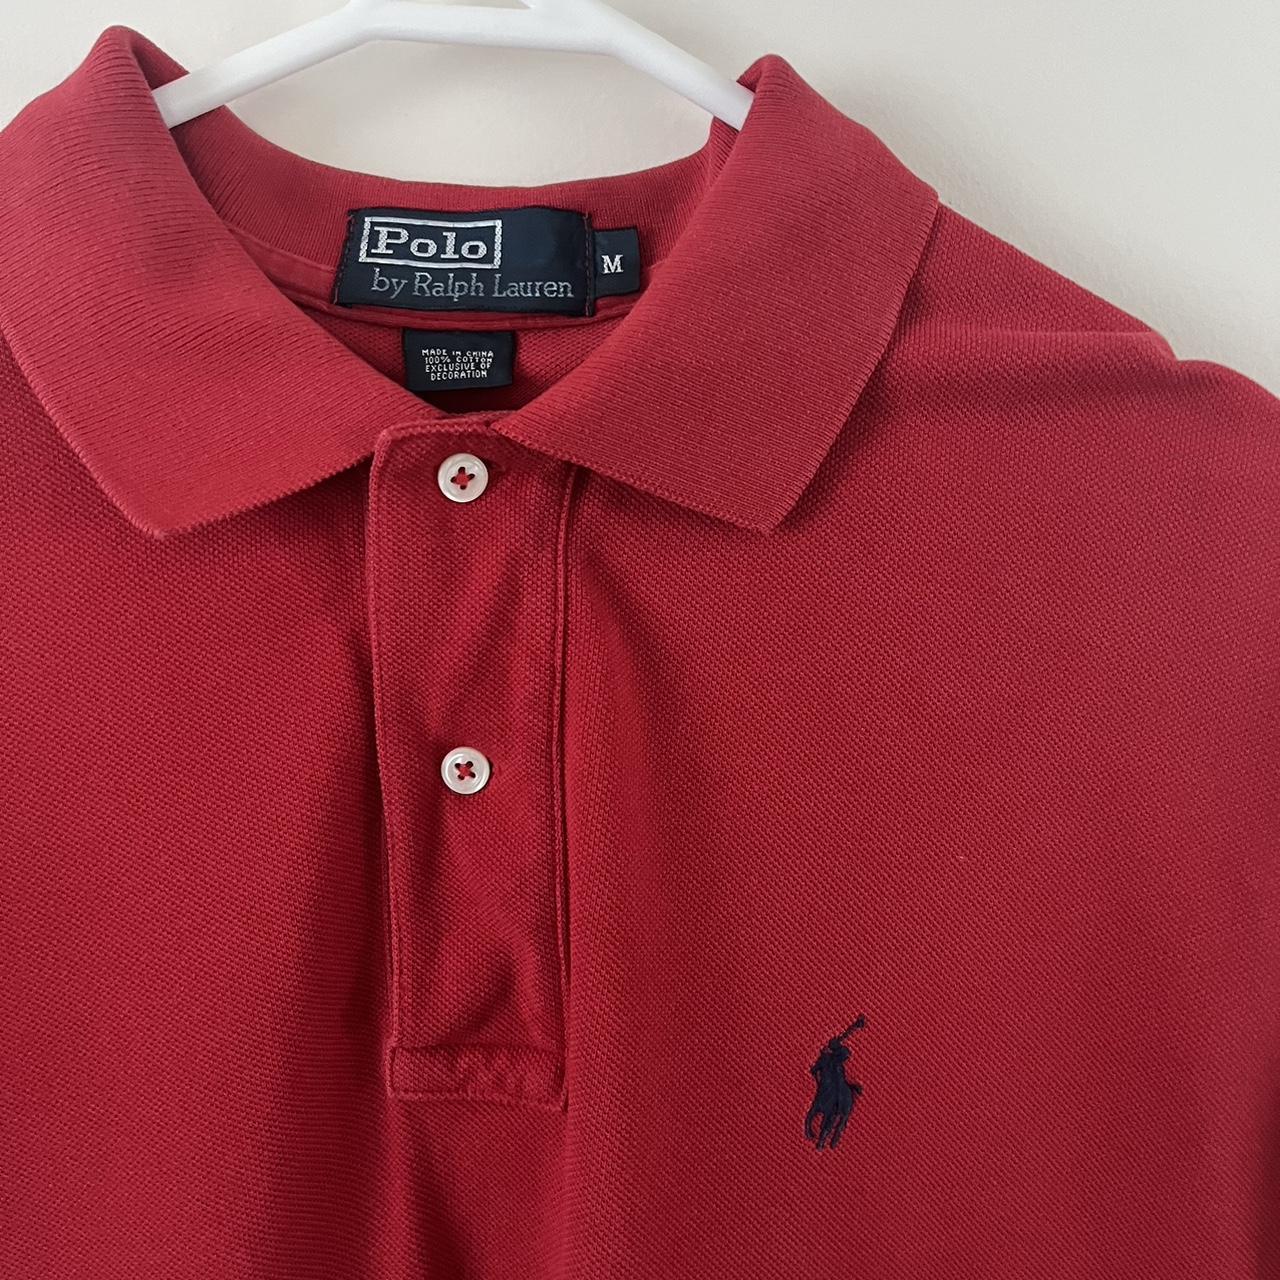 Ralph Lauren Polo T-shirt Red Size:... - Depop